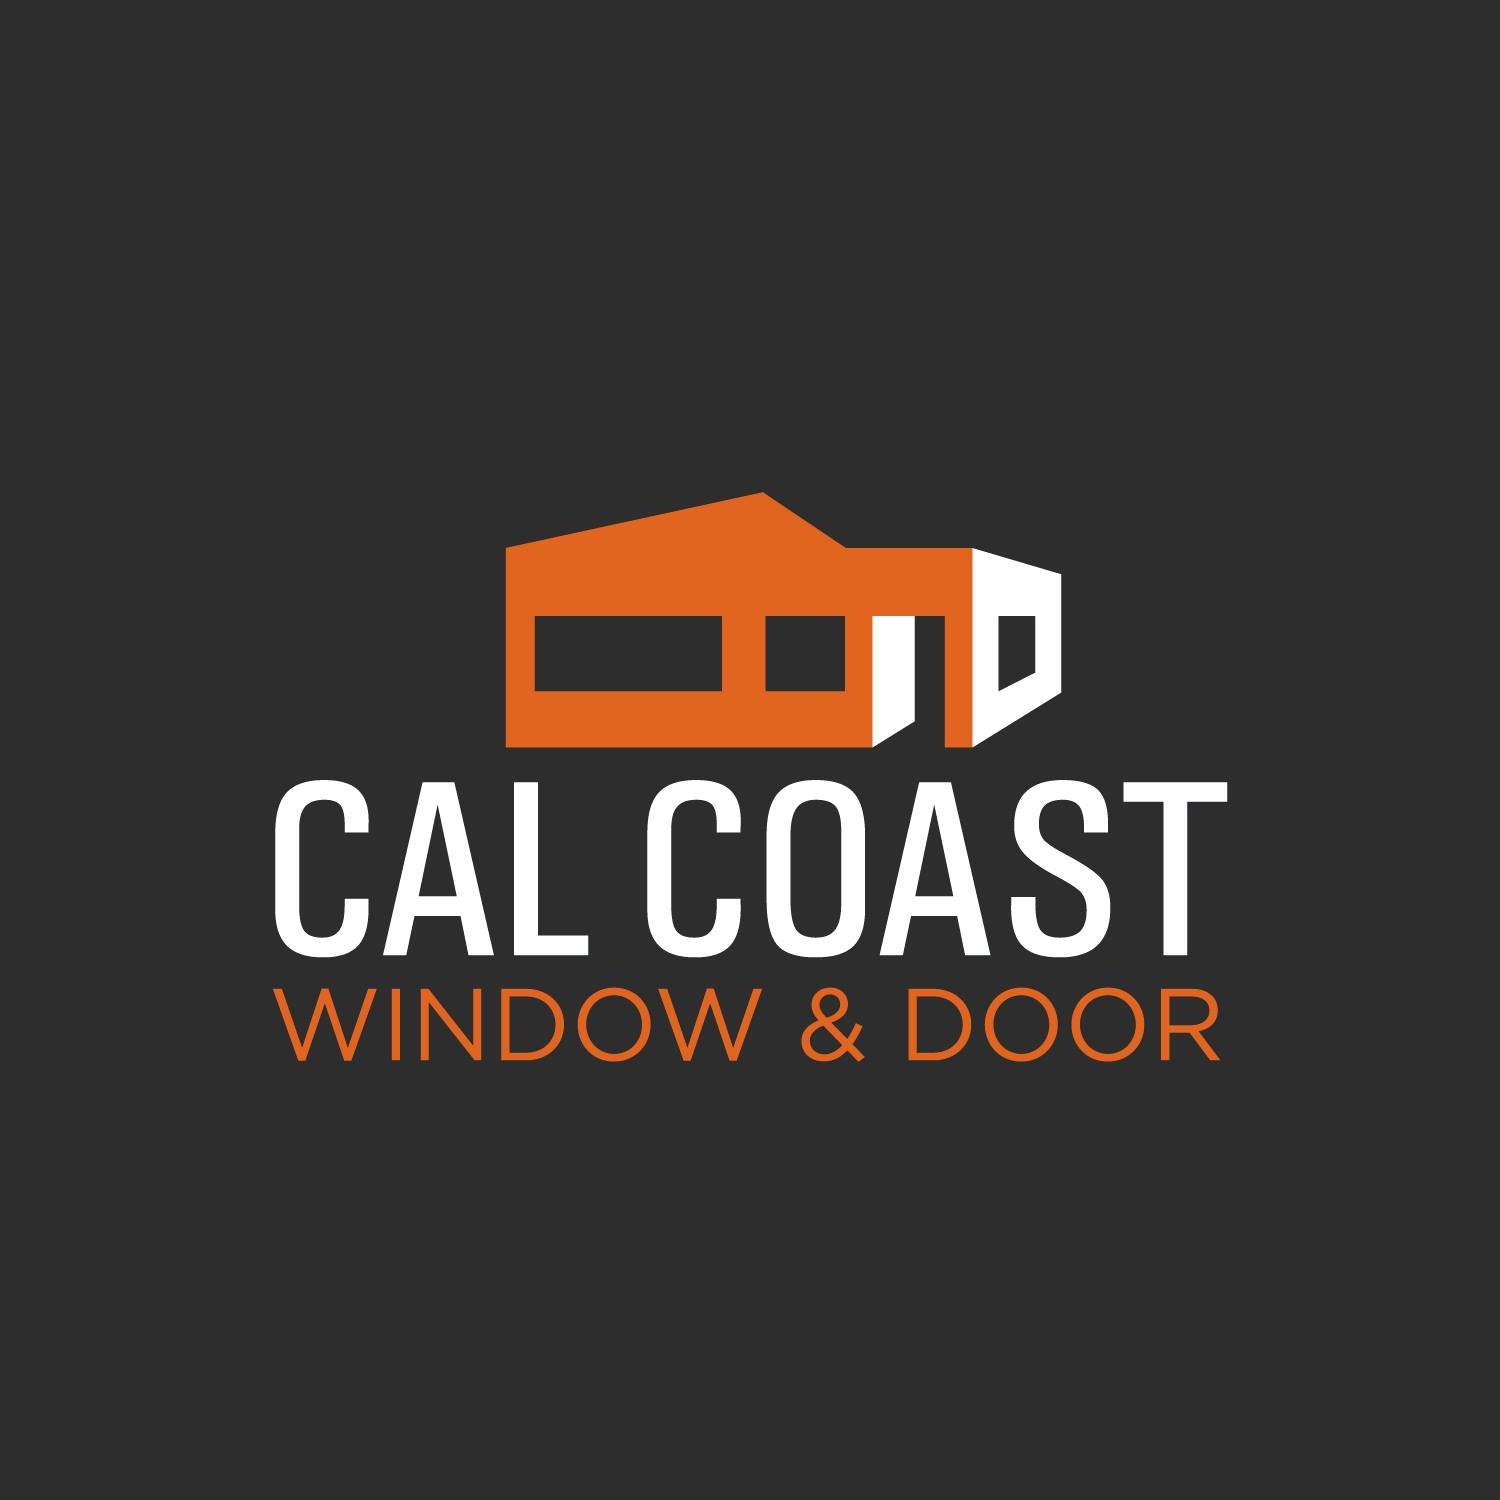 Company logo of Cal Coast Window & Door